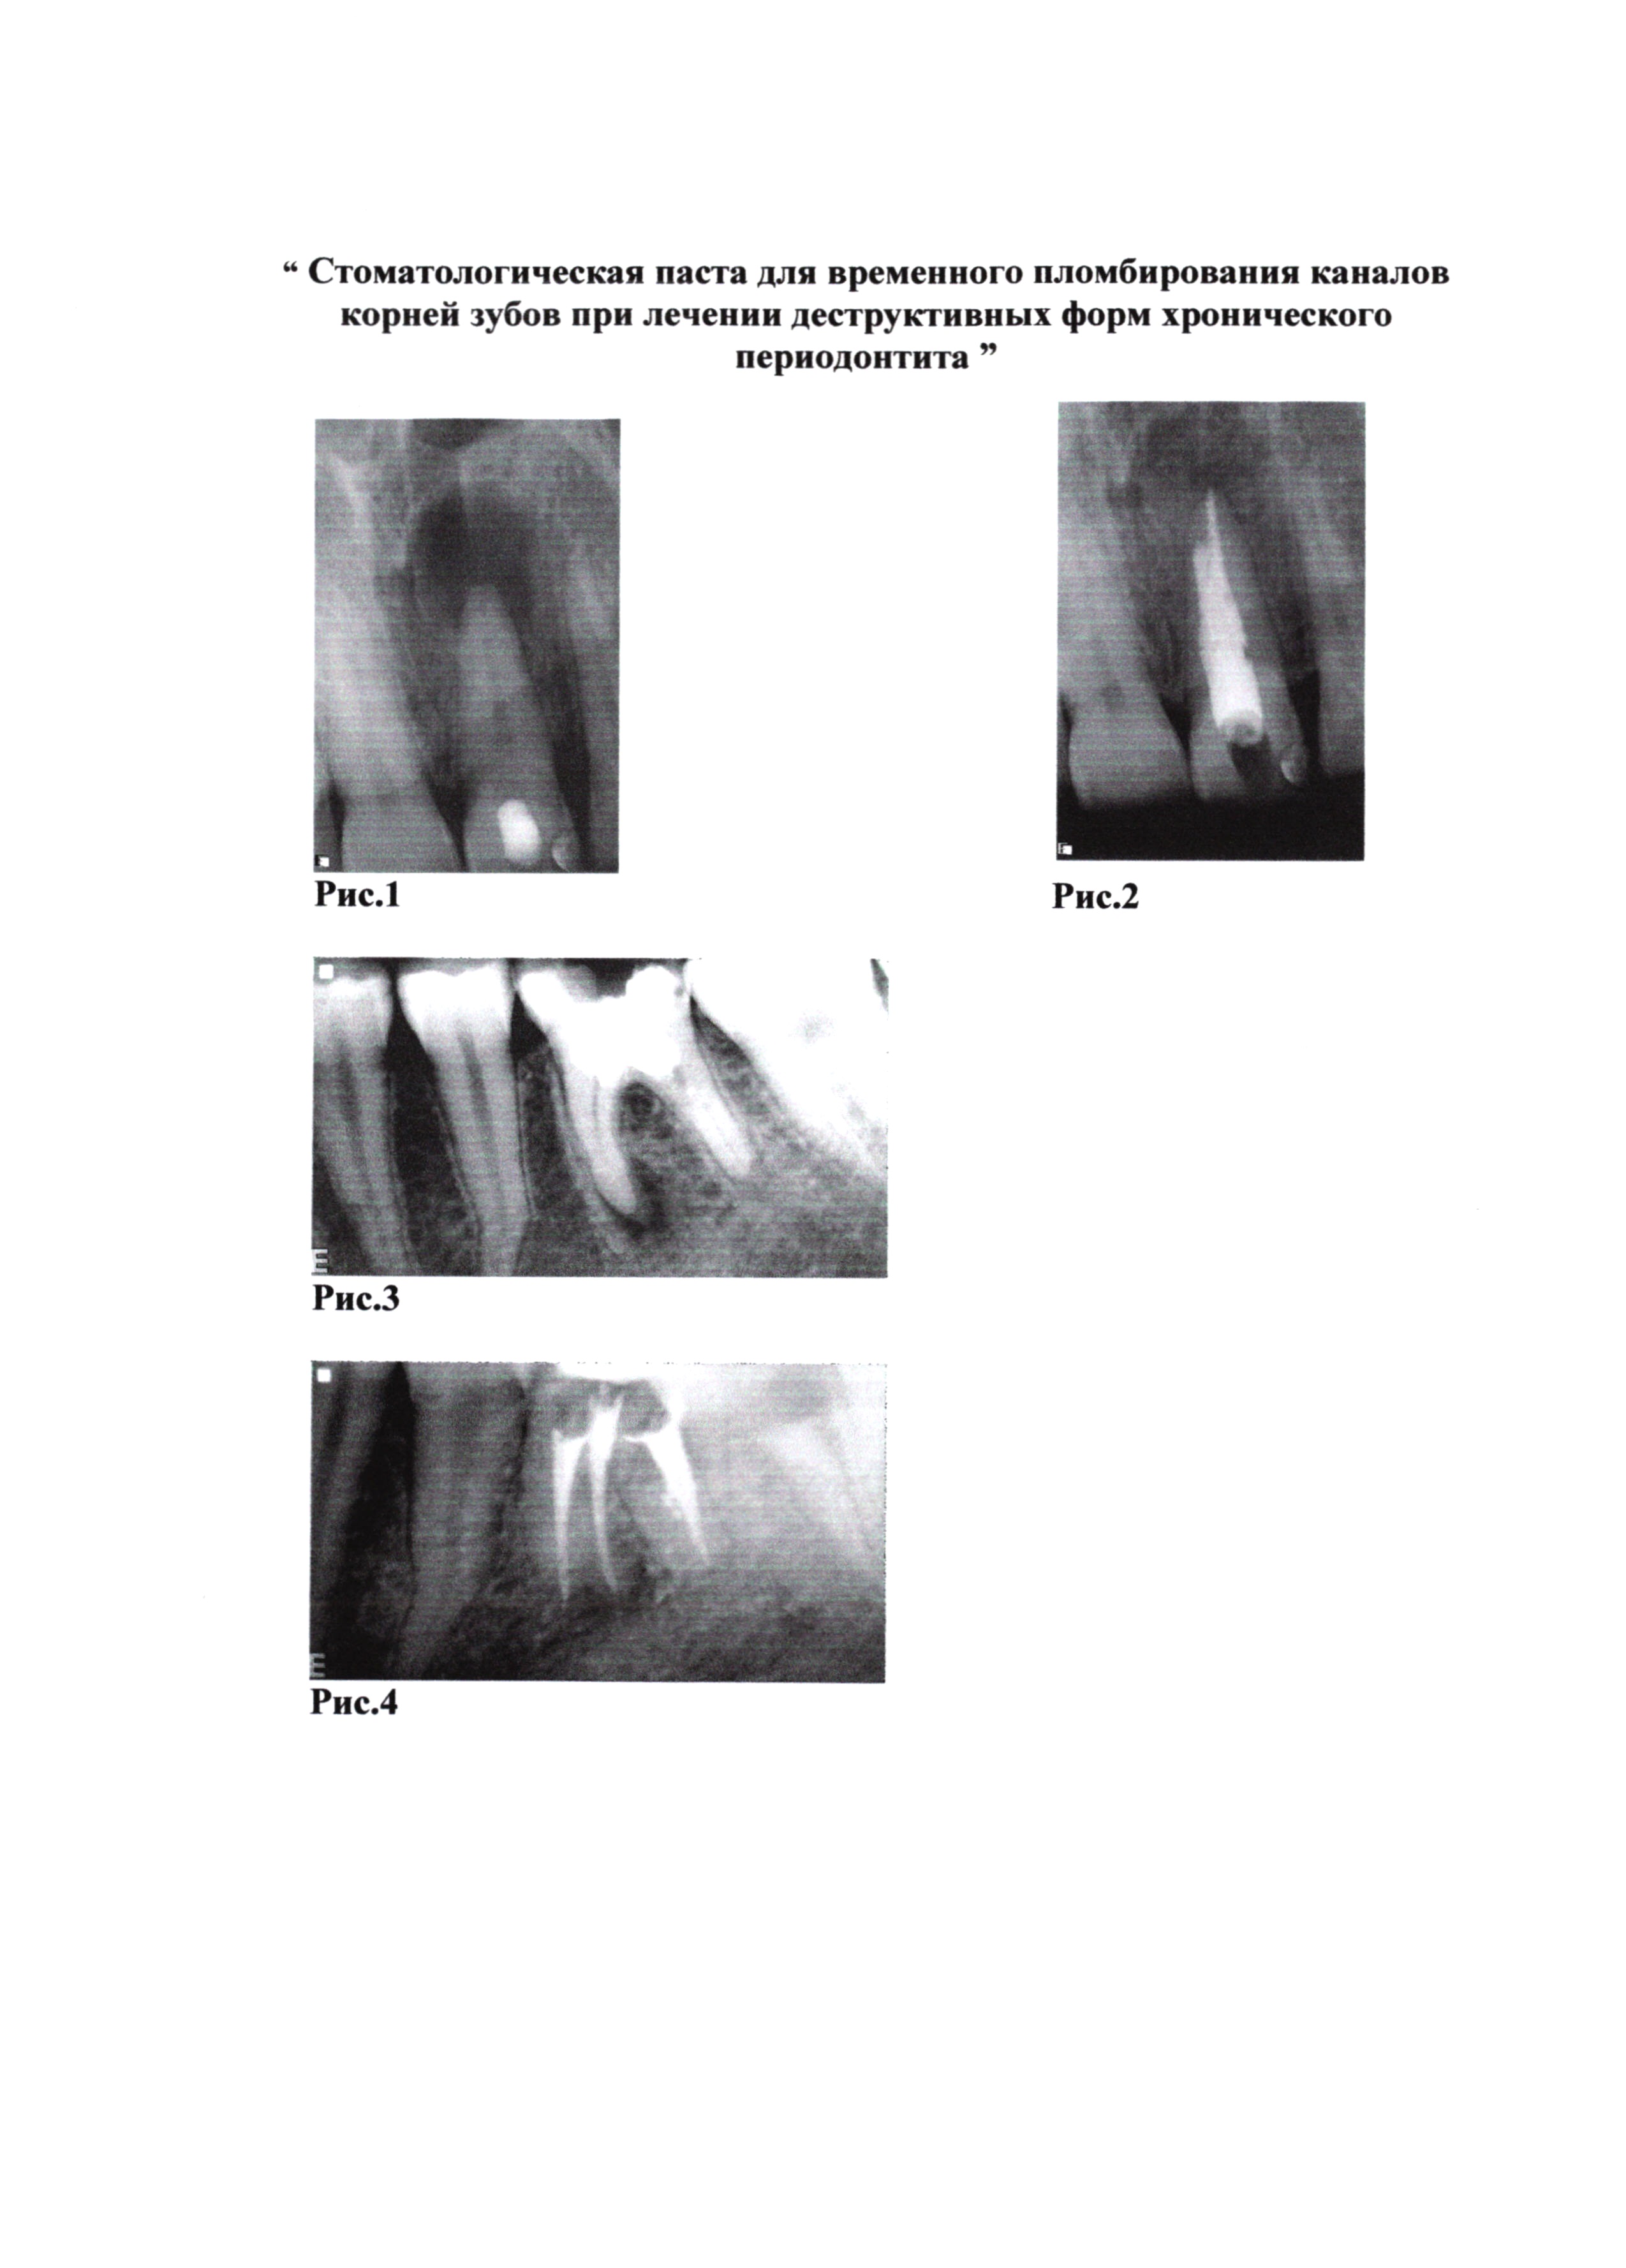 Стоматологическая паста для временного пломбирования каналов корней зубов при лечении деструктивных форм хронического периодонтита